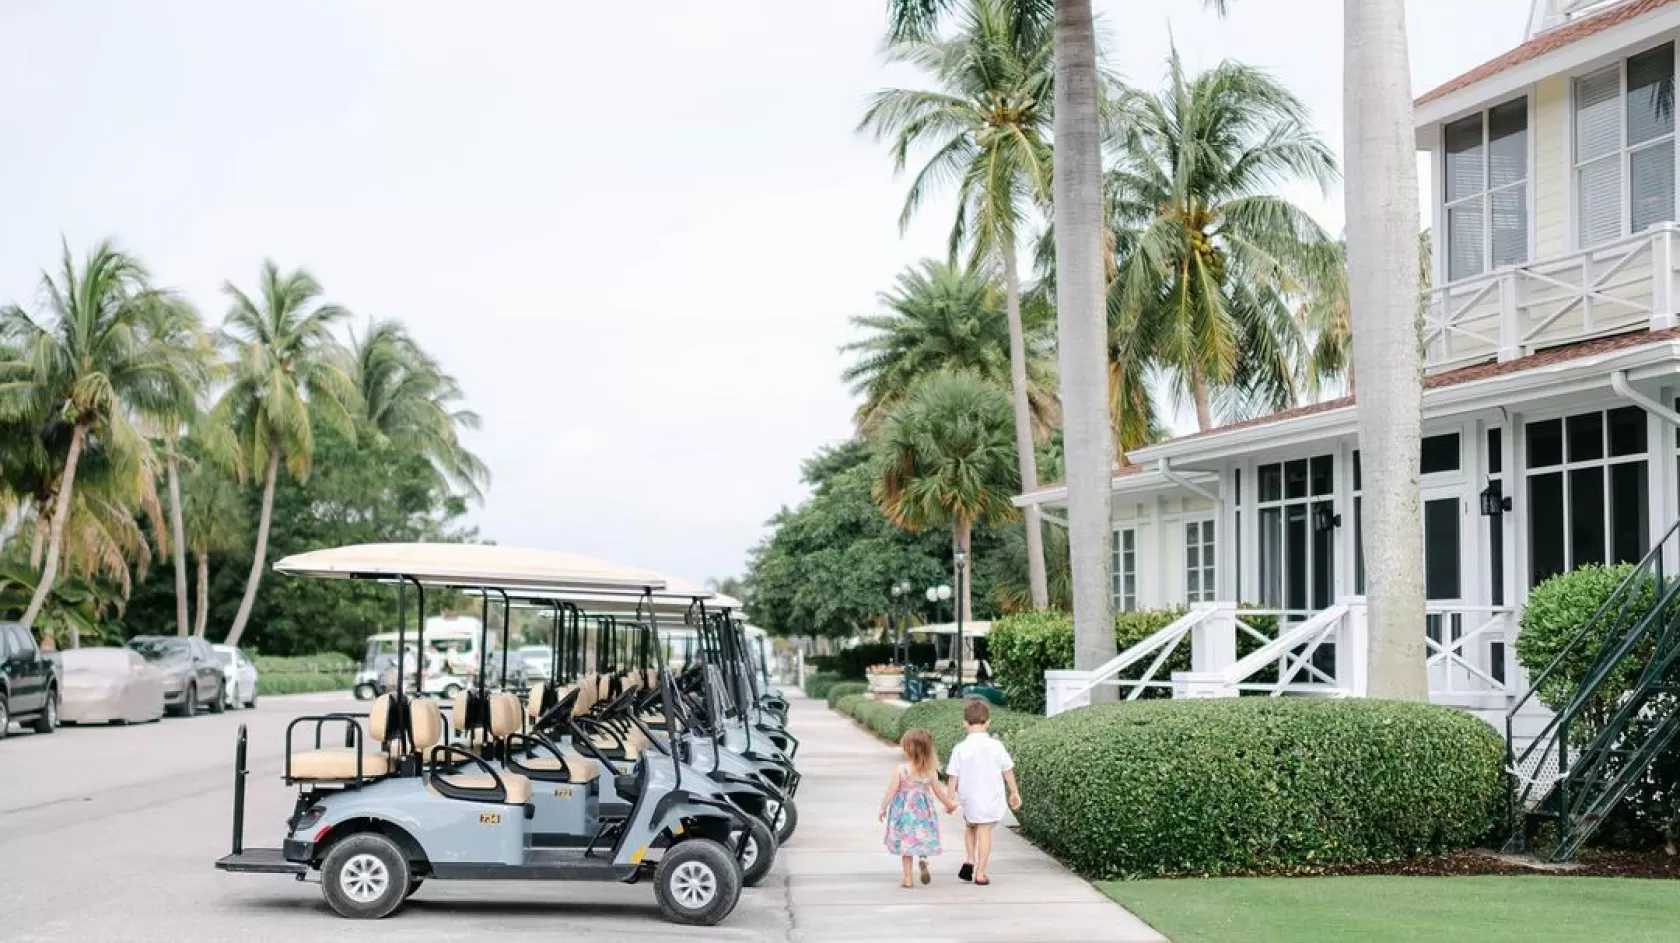 Gasparilla Inn Club Golf Cart Children Palm Trees Street